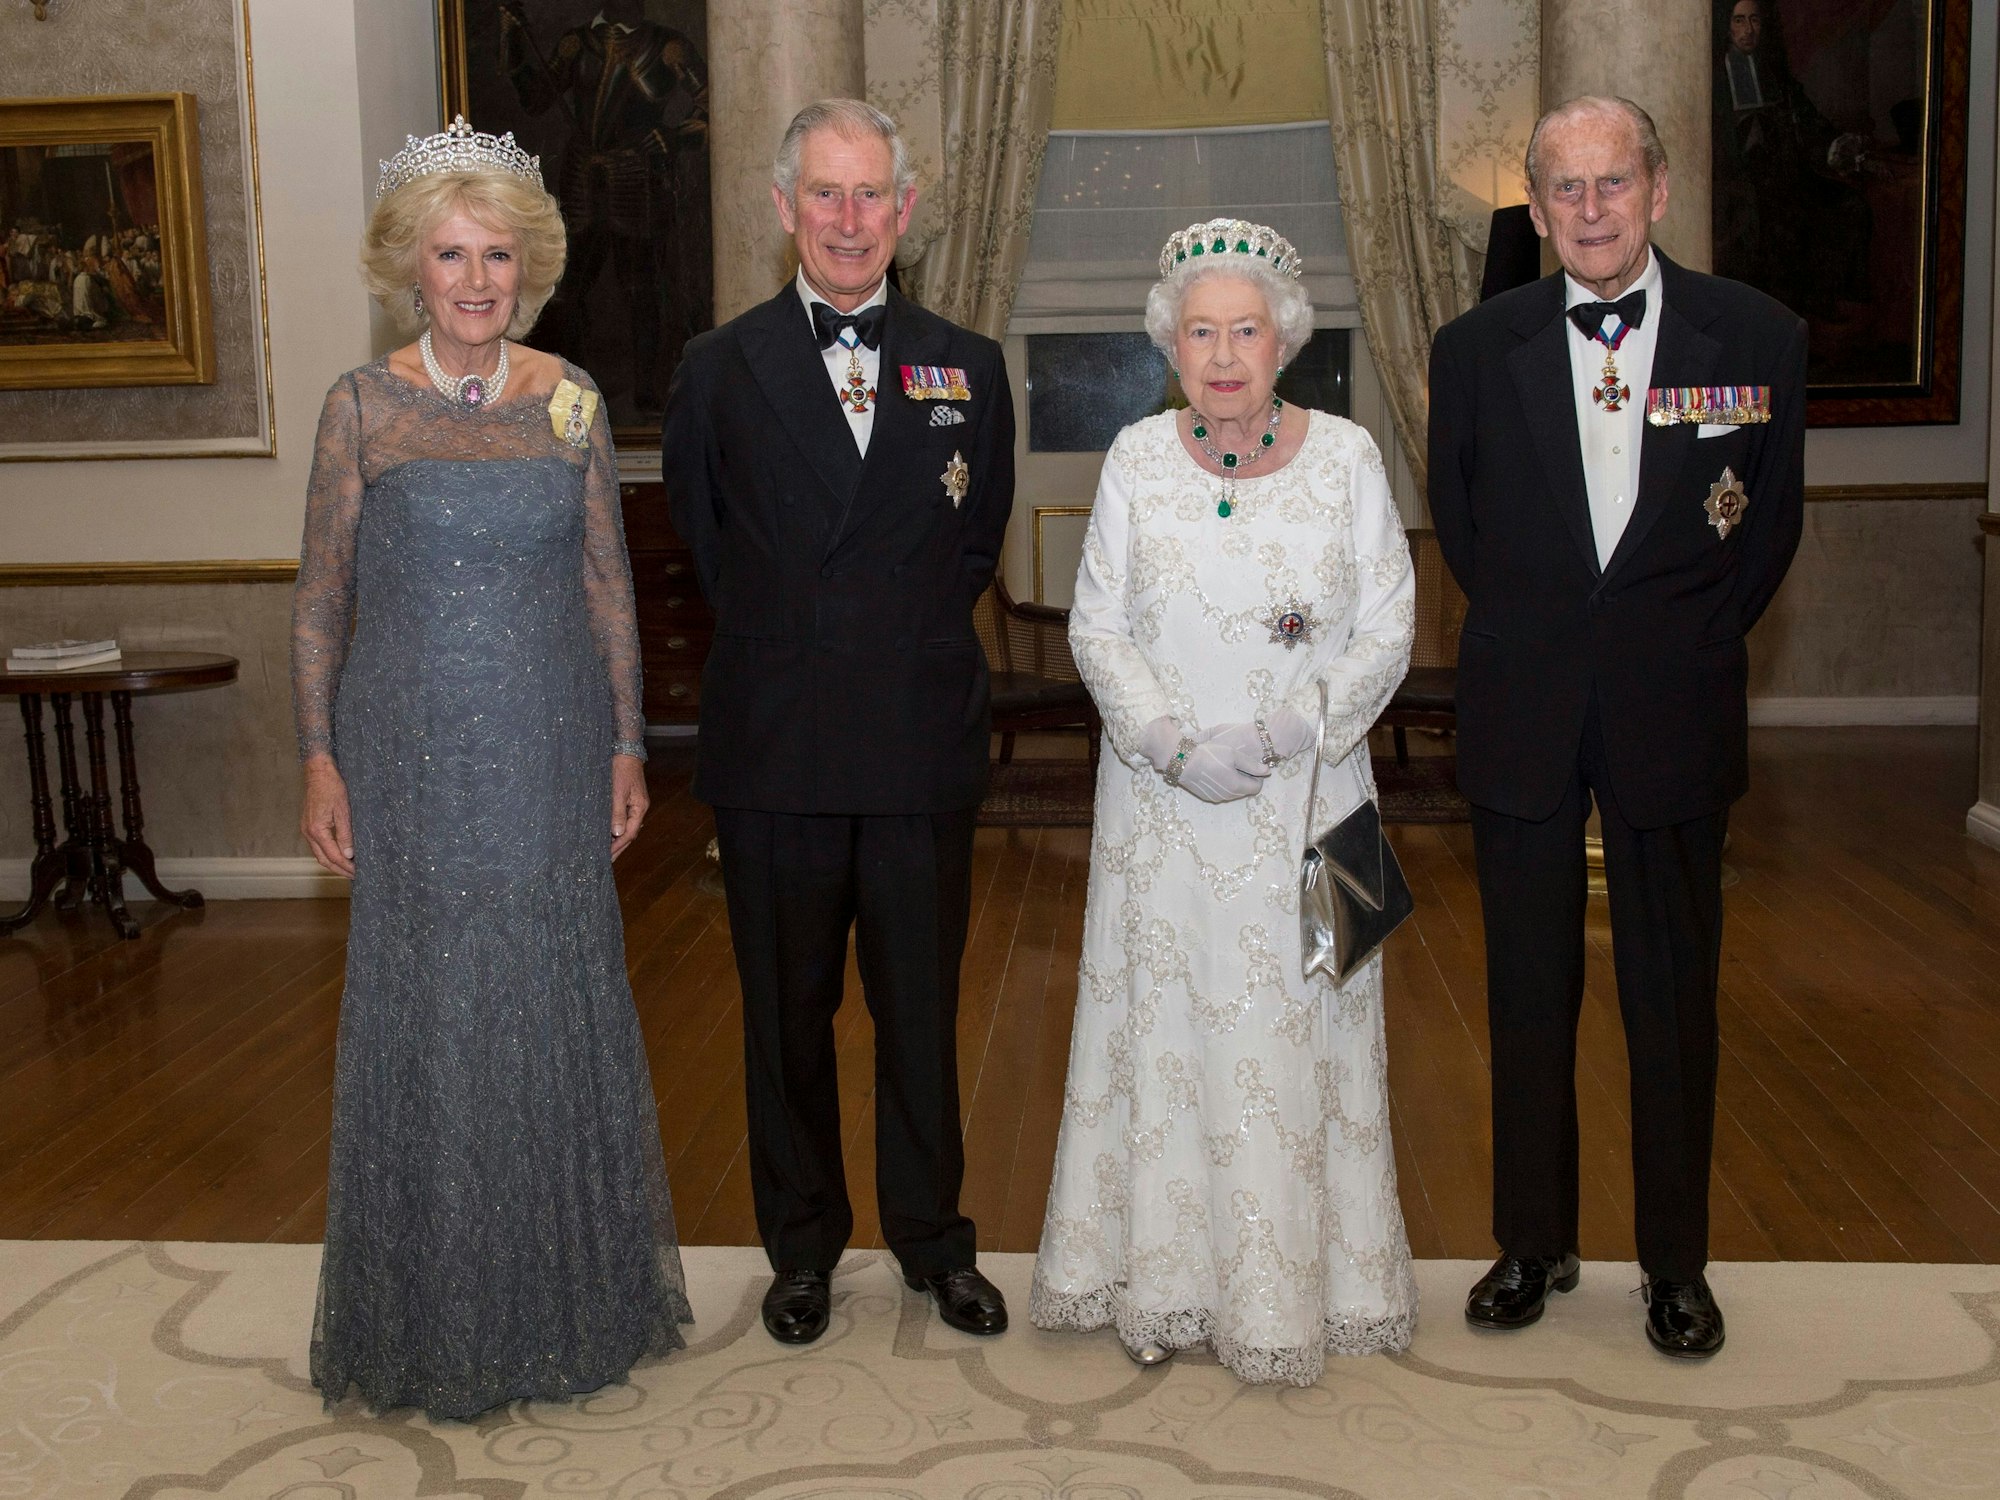 Königin Elizabeth (2-r), Prinz Philip, der Herzog von Edinburgh (r), Prinz Charles, der Prinz von Wales (2-l) und Camilla, die Herzogin von Cornwall.